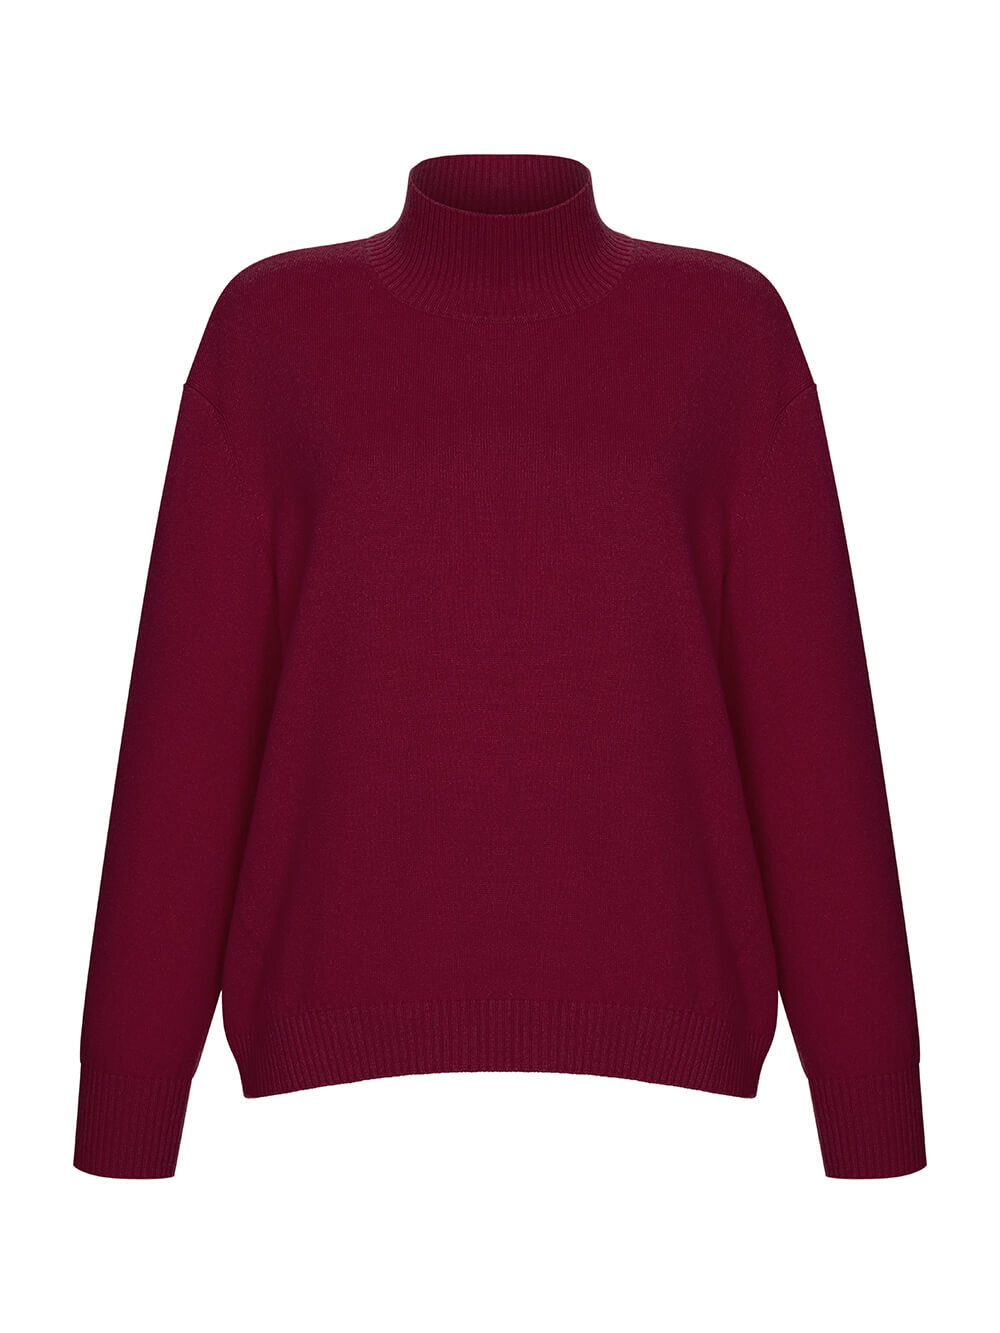 Женский свитер бордового цвета из шерсти и кашемира - фото 1